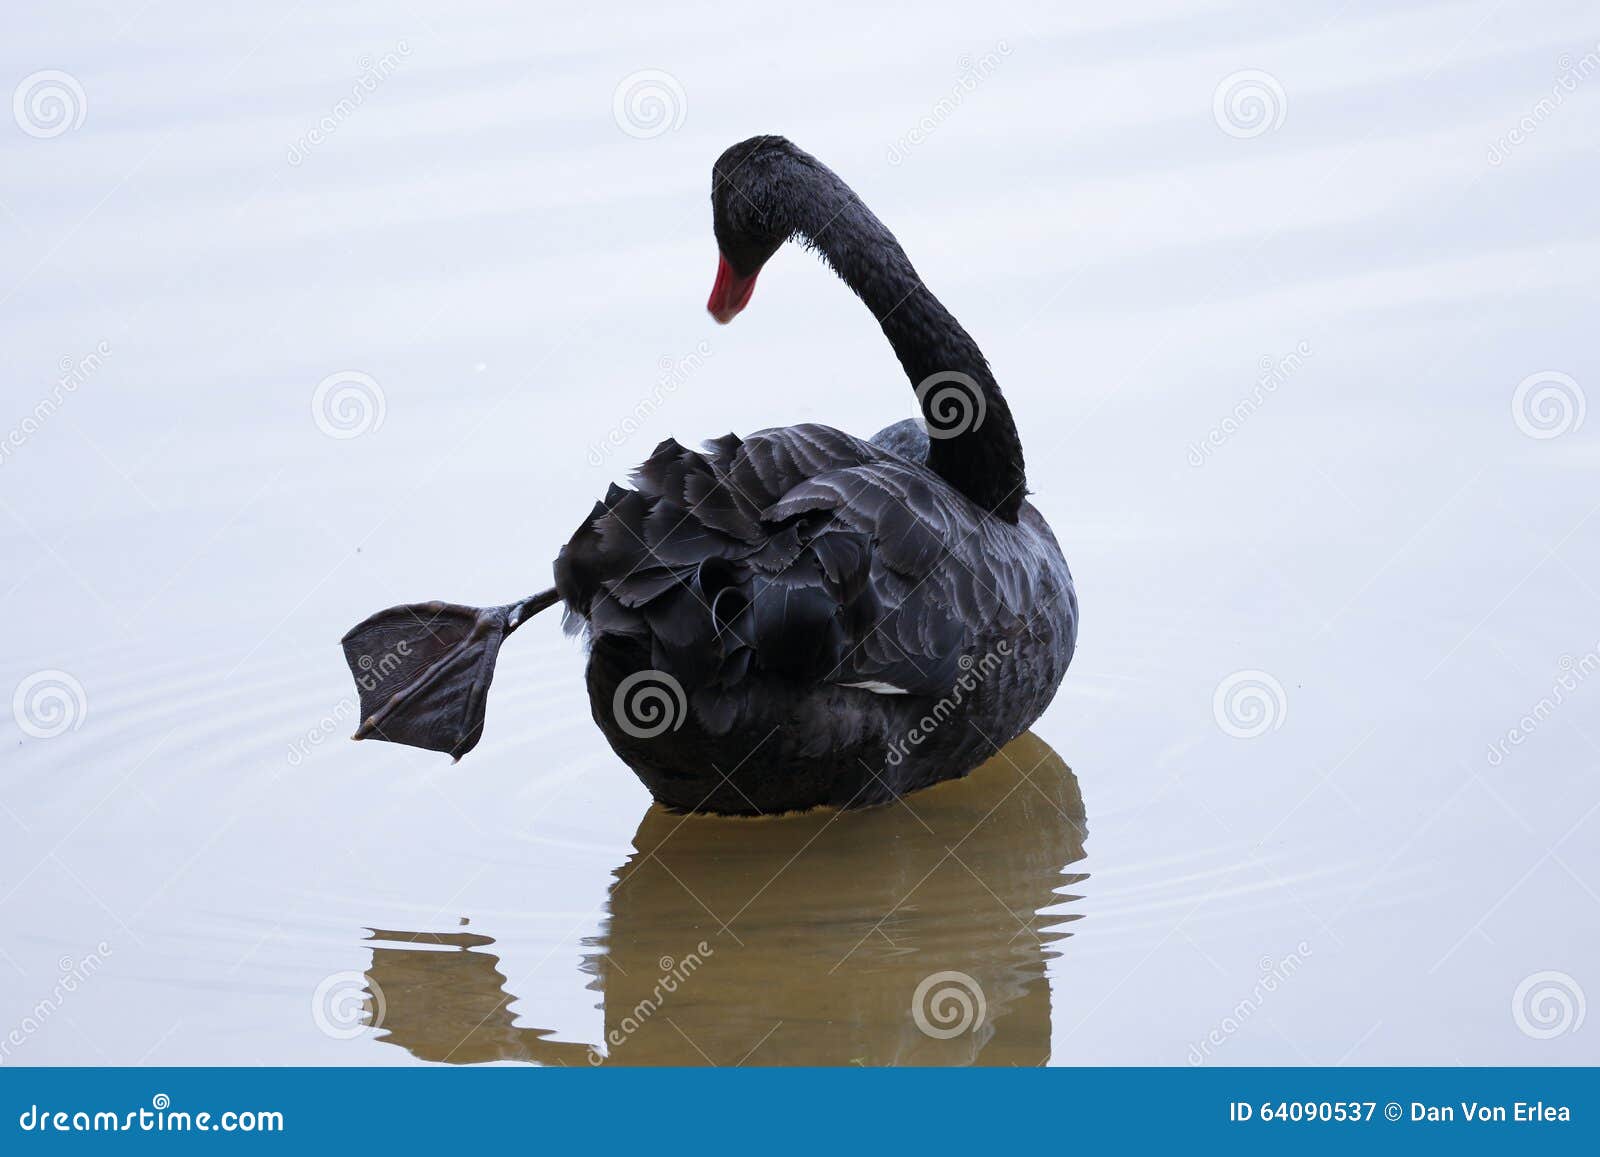 Black Swan Ballet danser portrait, hasselblad, 8k, | Stable Diffusion